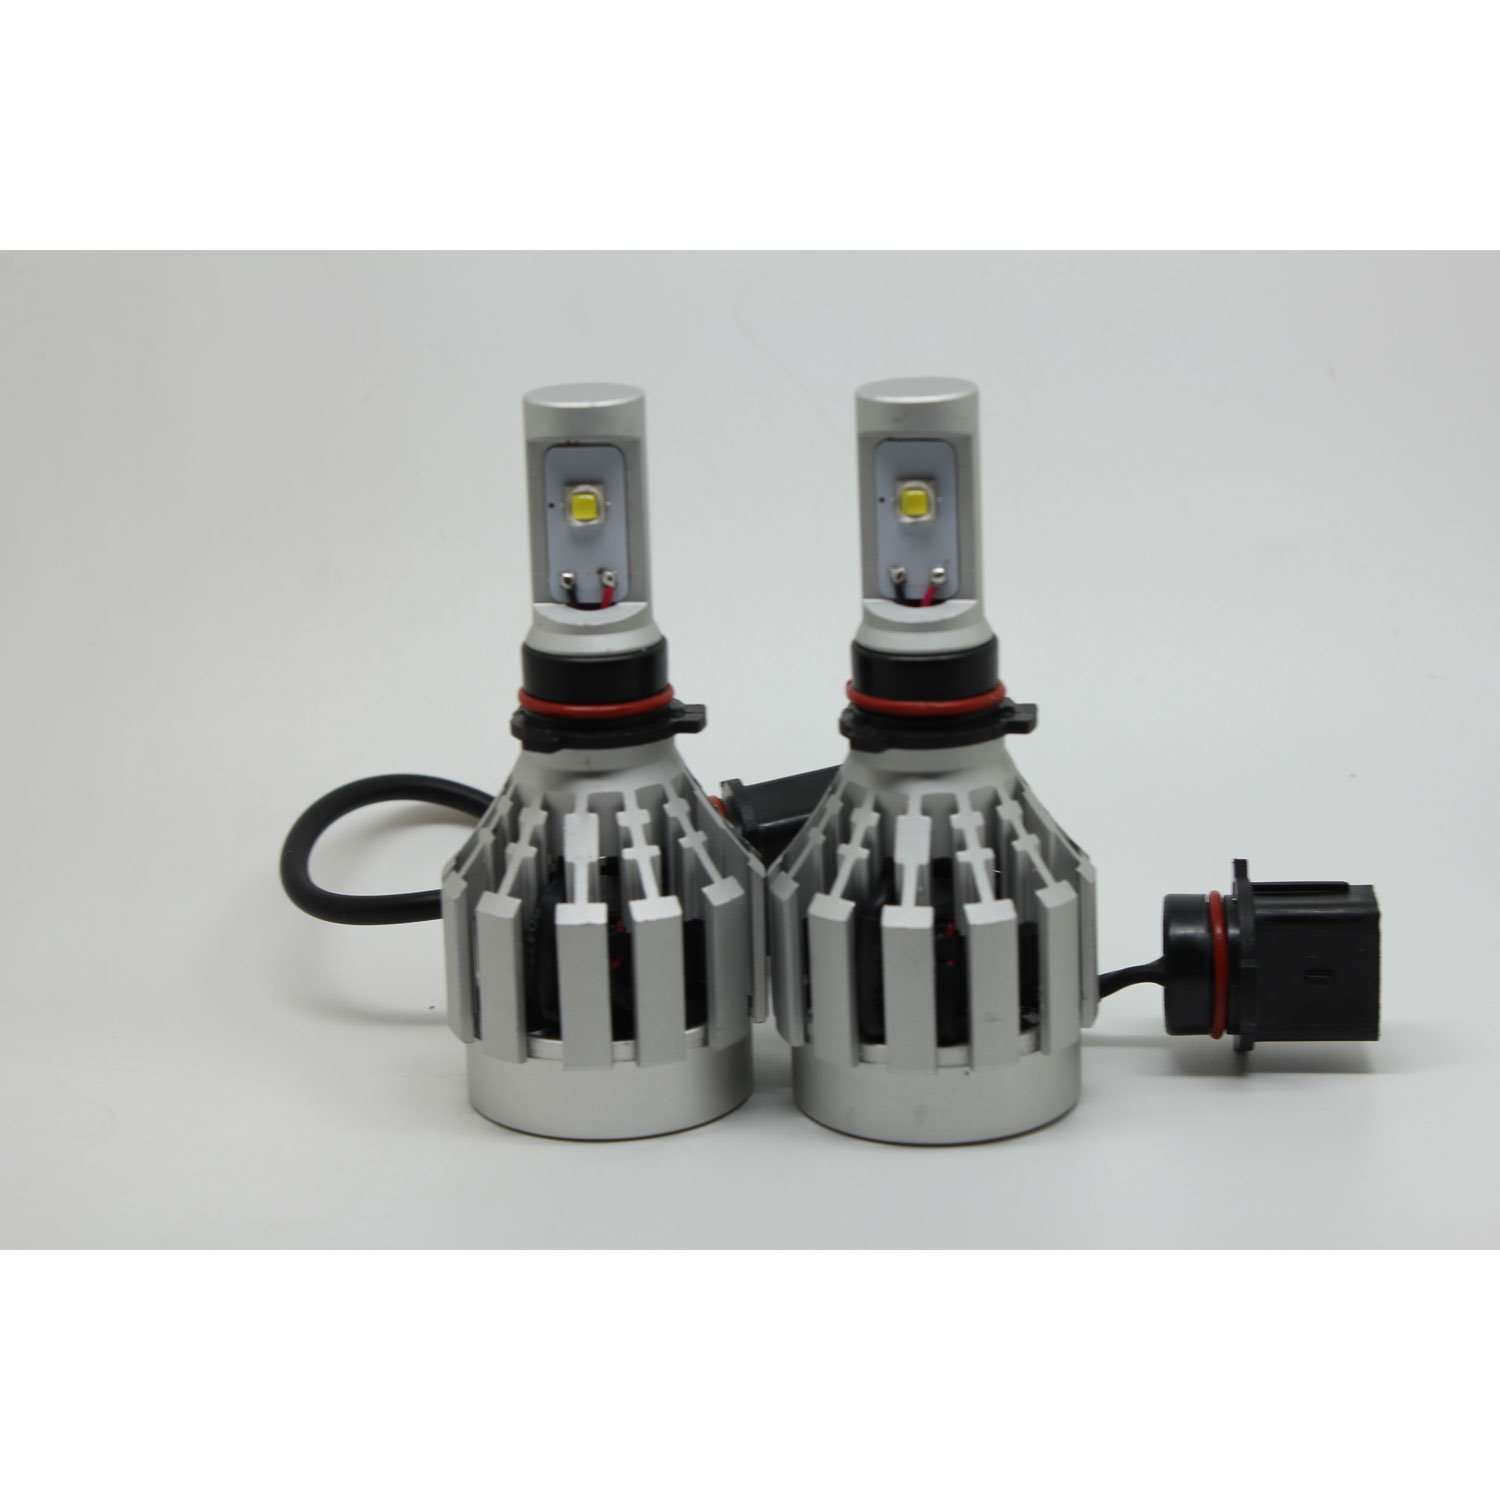 Cree XM-L2 LED Kit P13W Bulb Replacement